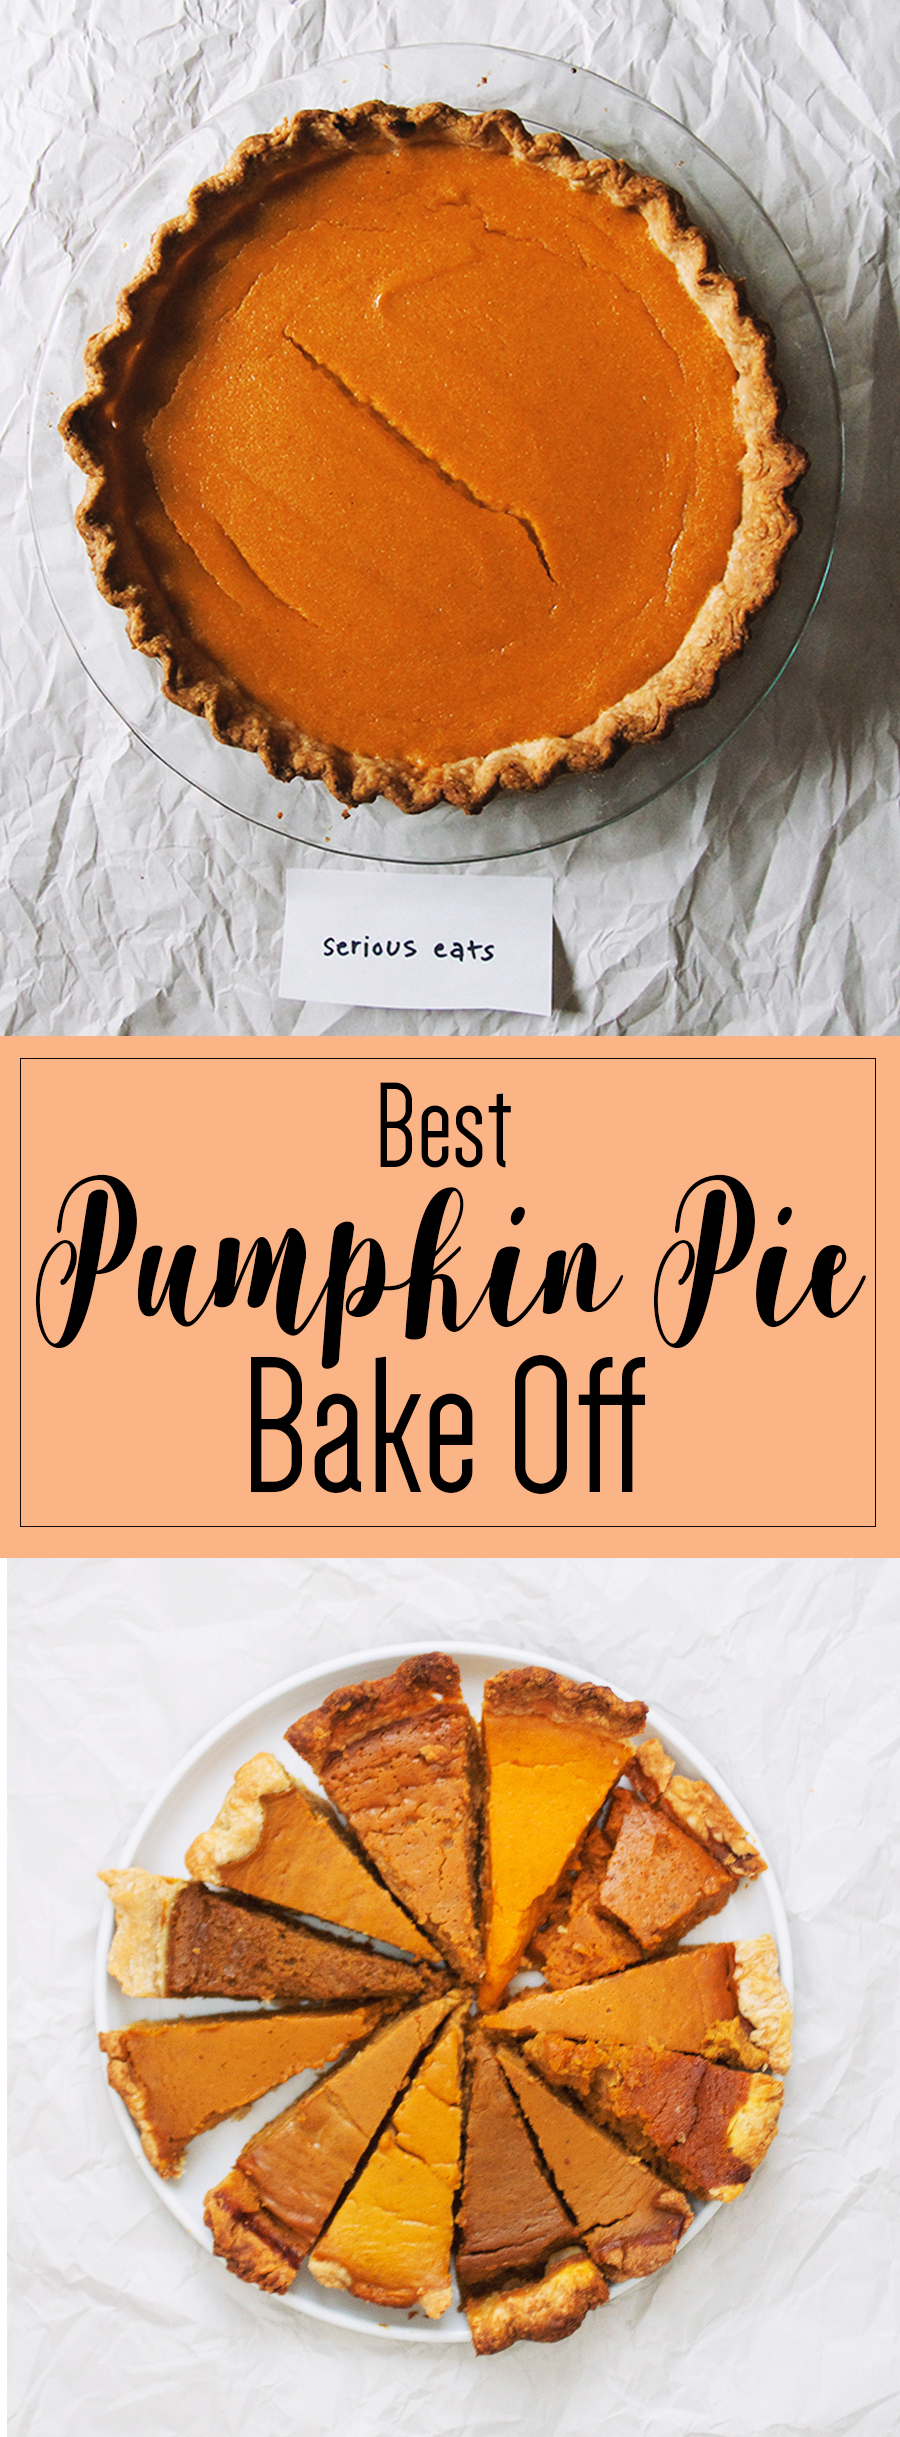 Best Pumpkin Pie Bake Off // The Pancake Princess